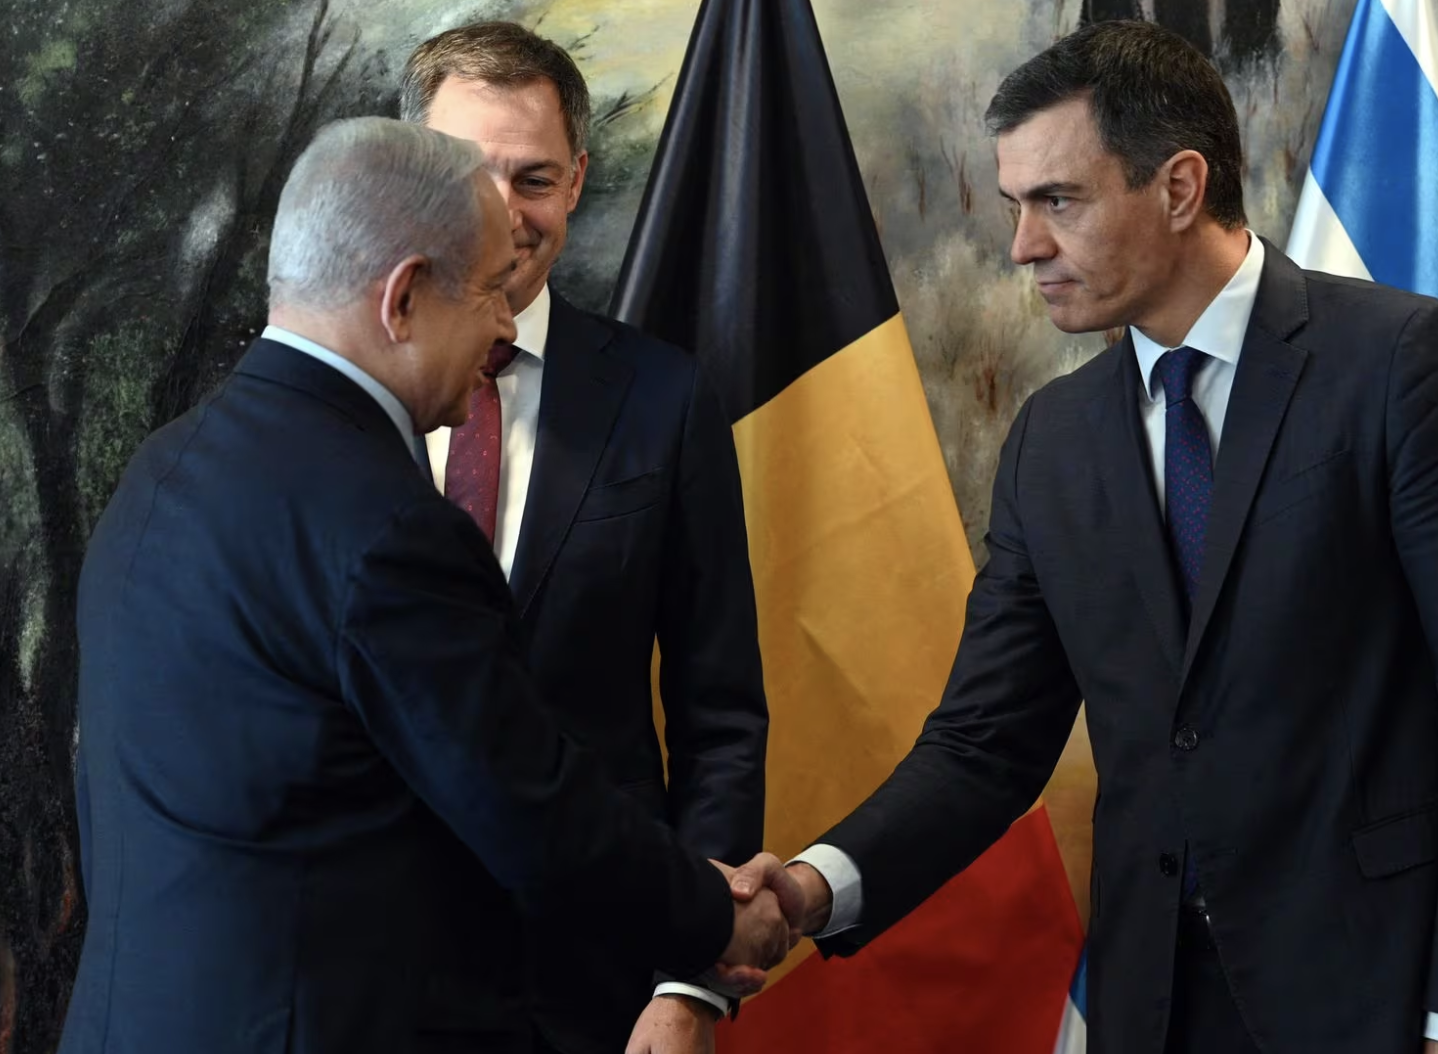  Thủ tướng Israel Benjamin Netanyahu (trái) bắt tay Thủ tướng Tây Ban Nha Pedro Sánchez (phải) bên cạnh Thủ tướng Bỉ Alexander De Croo trong cuộc gặp mới đây ở Jerusalem. Ảnh: AFP